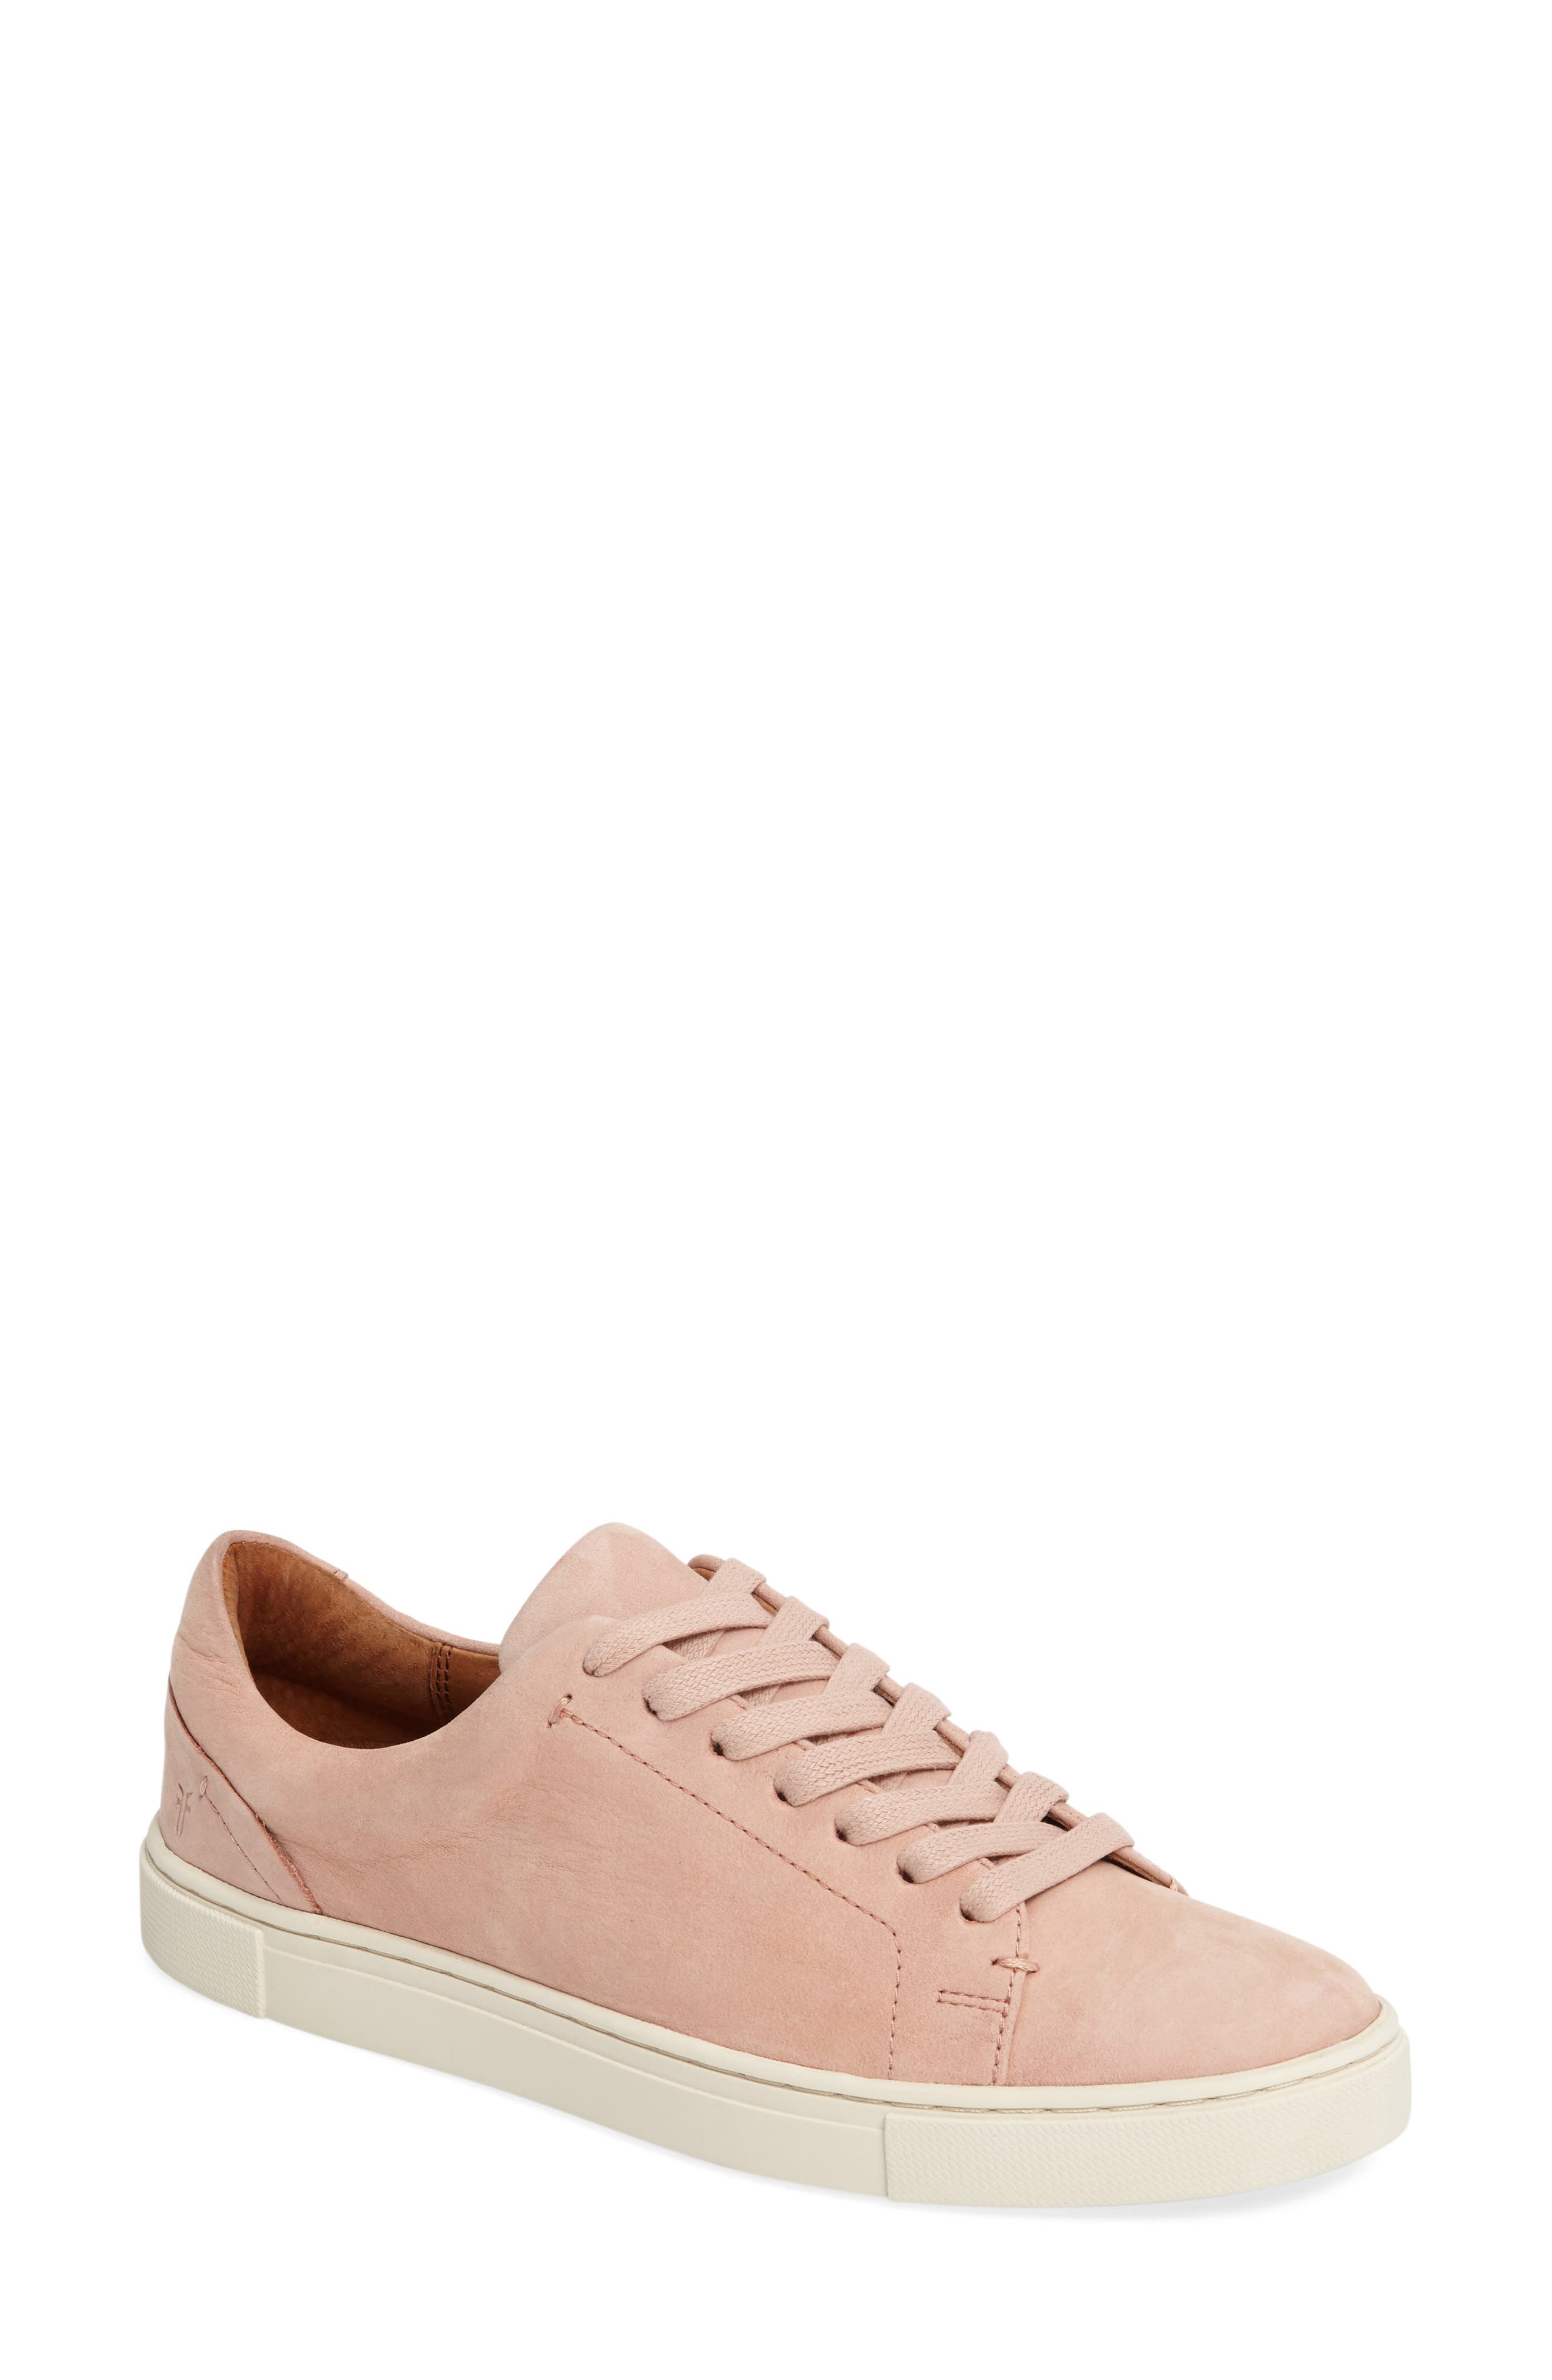 frye pink sneakers